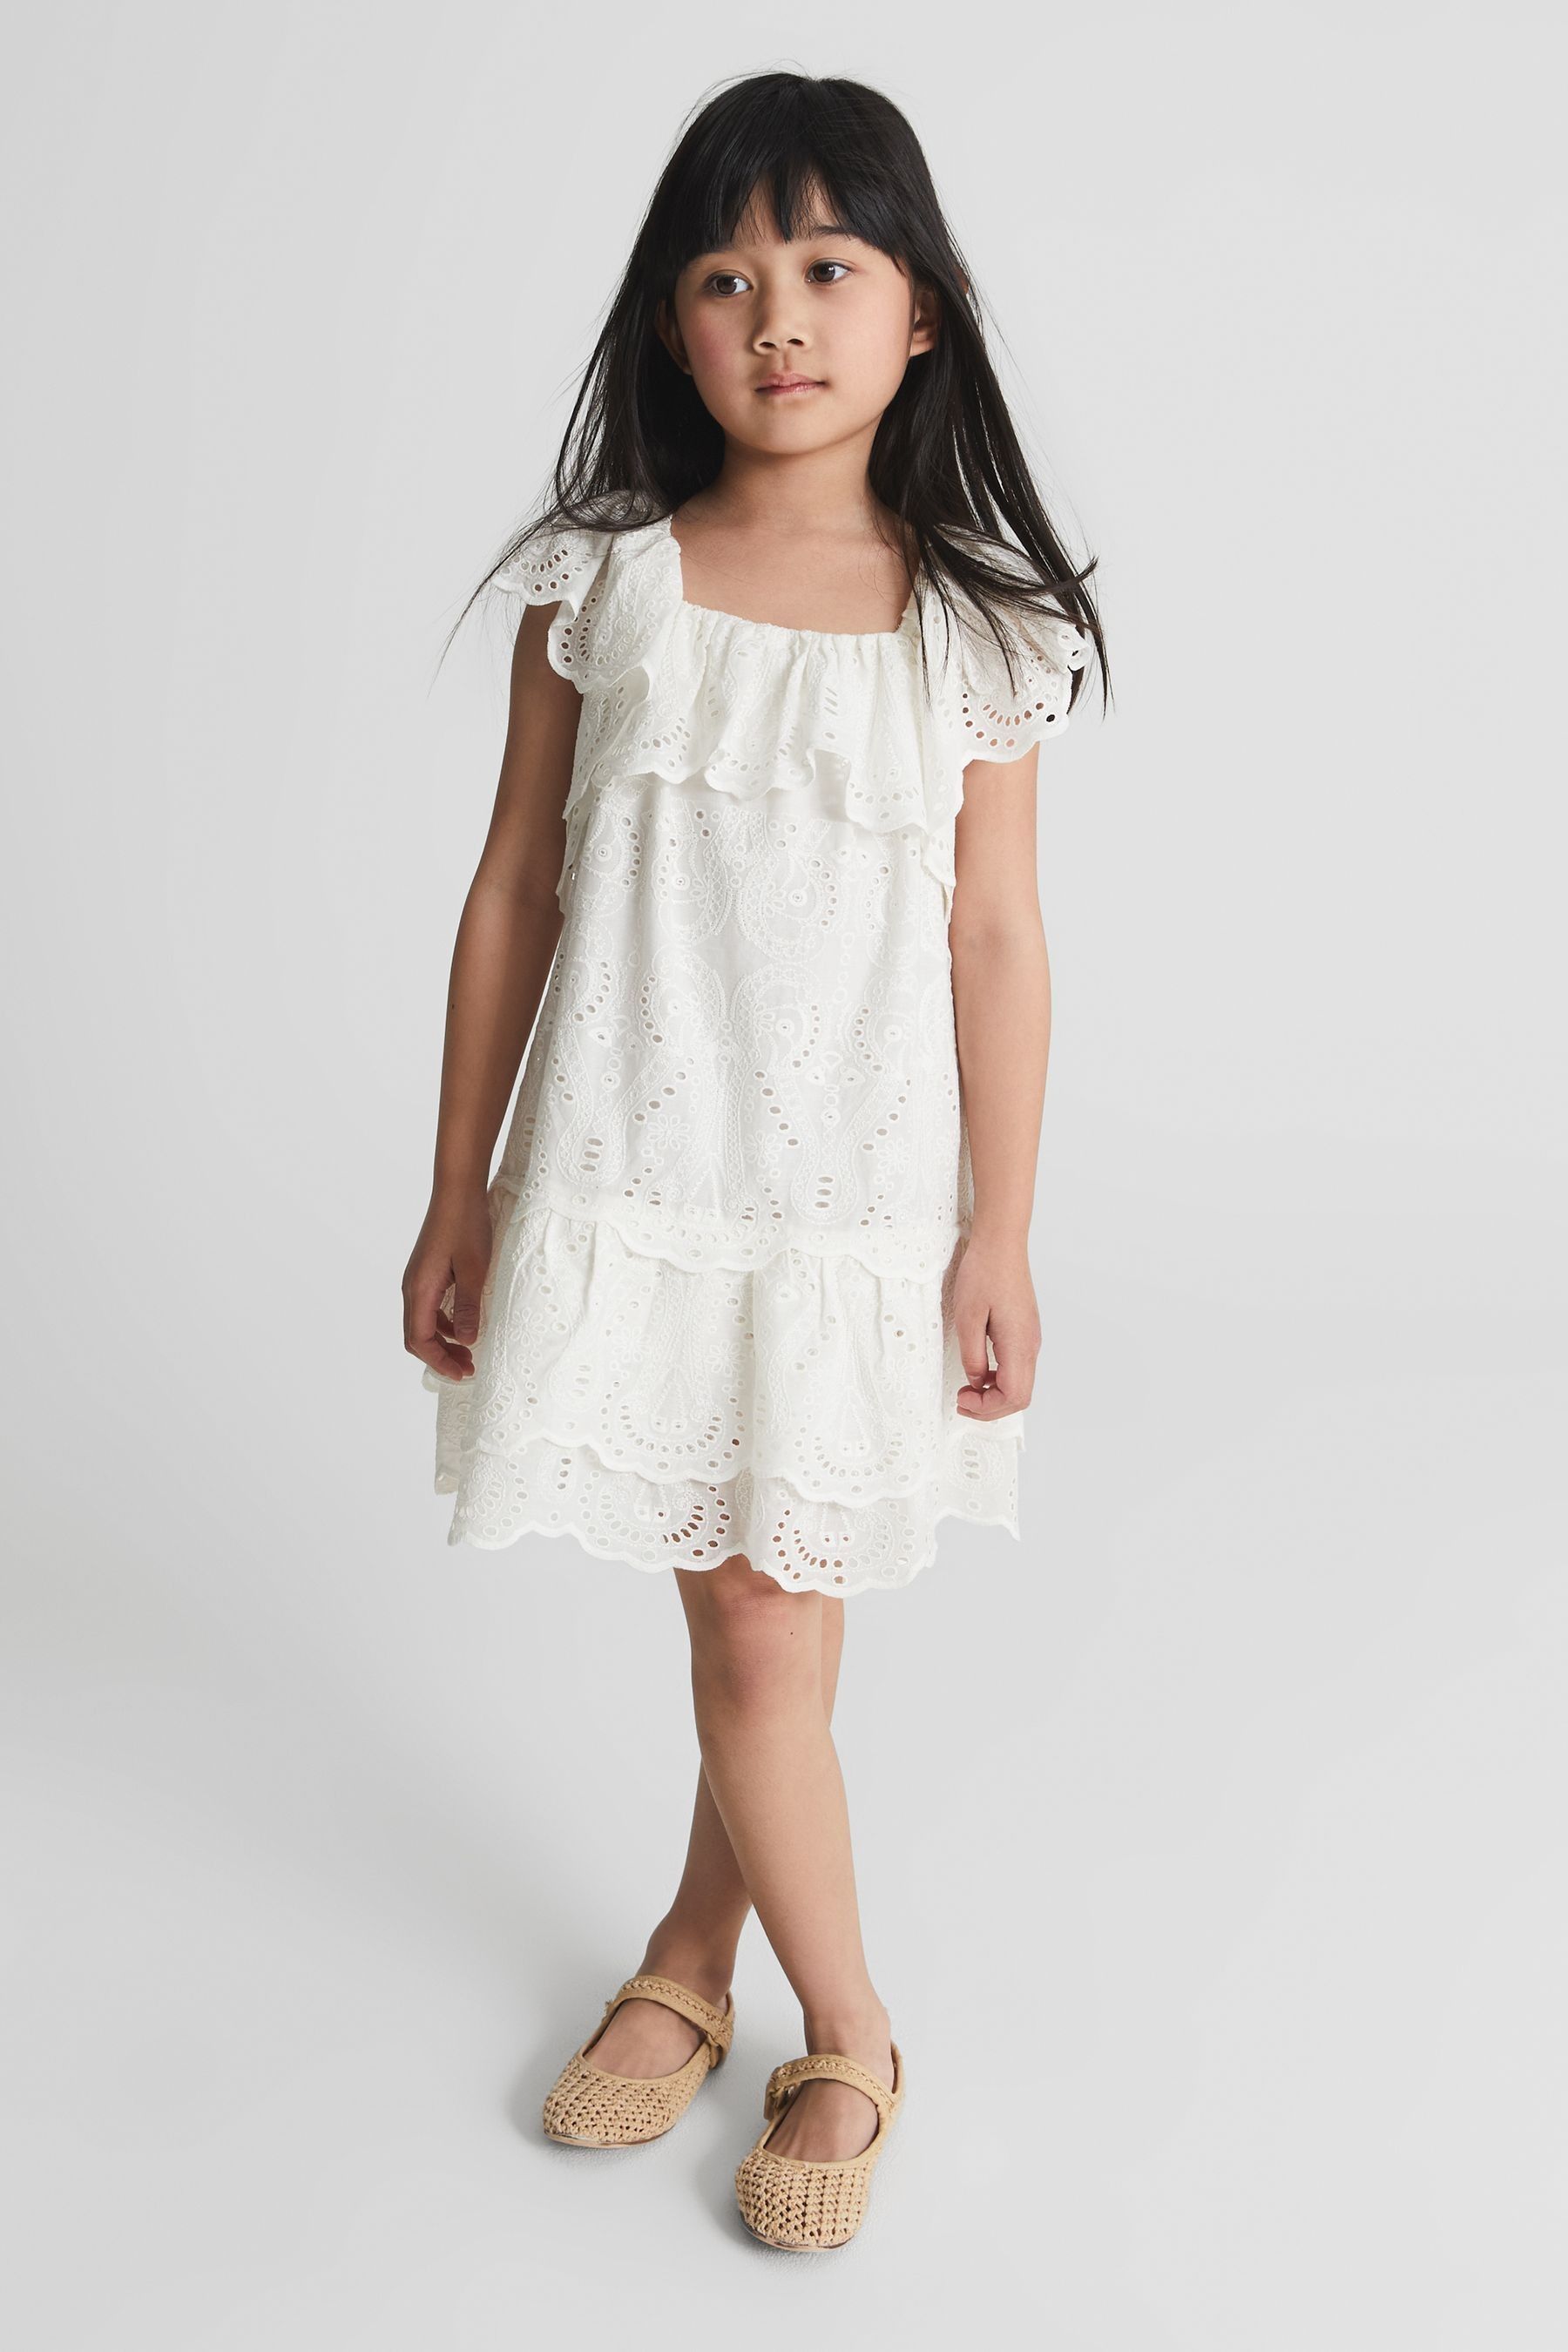 Sia - Ivory Jr Lace Mini Dress